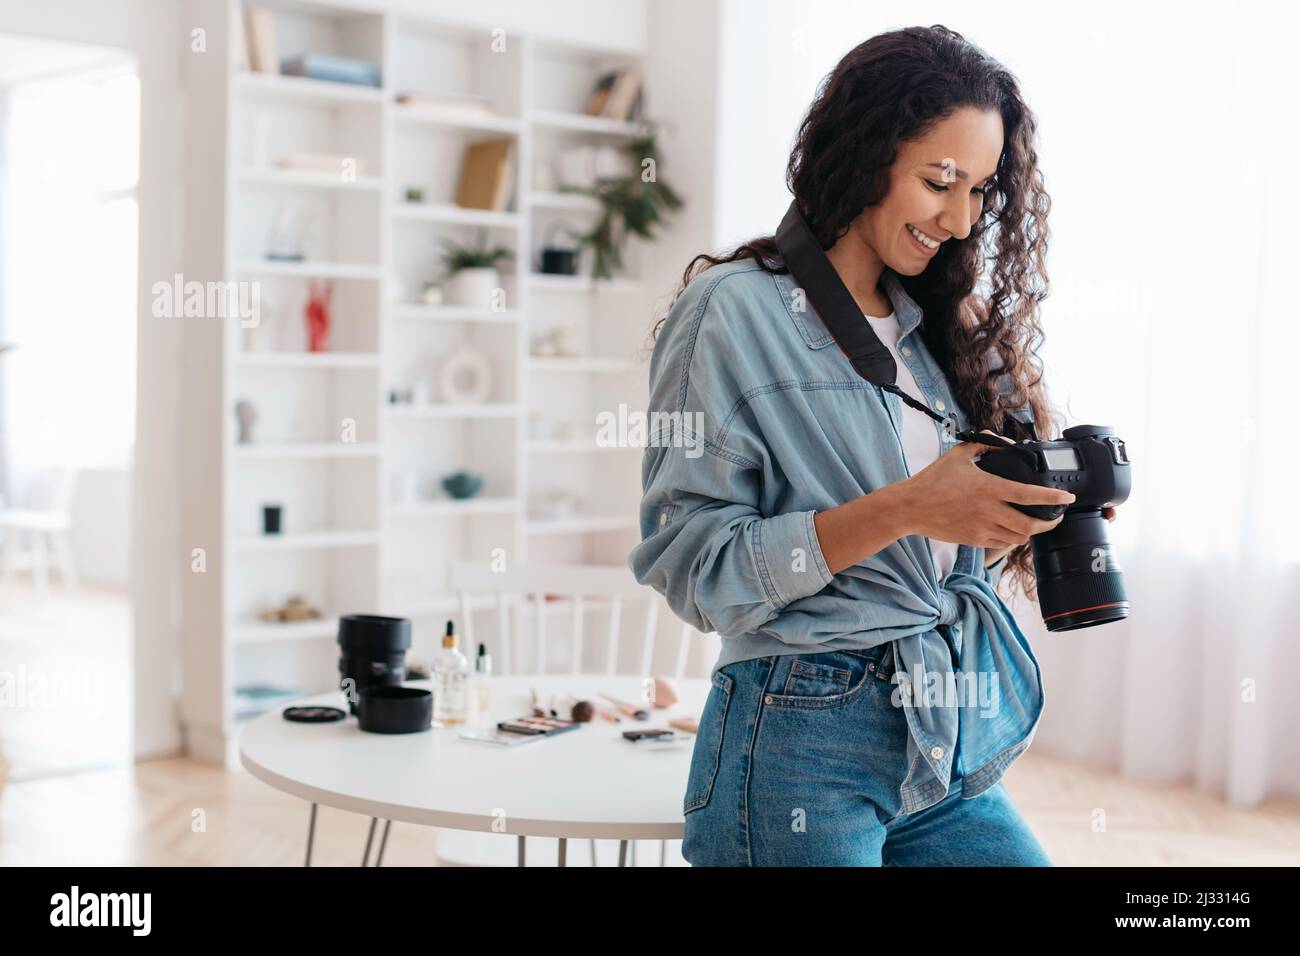 Photographe femme tenant l'appareil photo travailler prendre des photos debout à la maison Banque D'Images